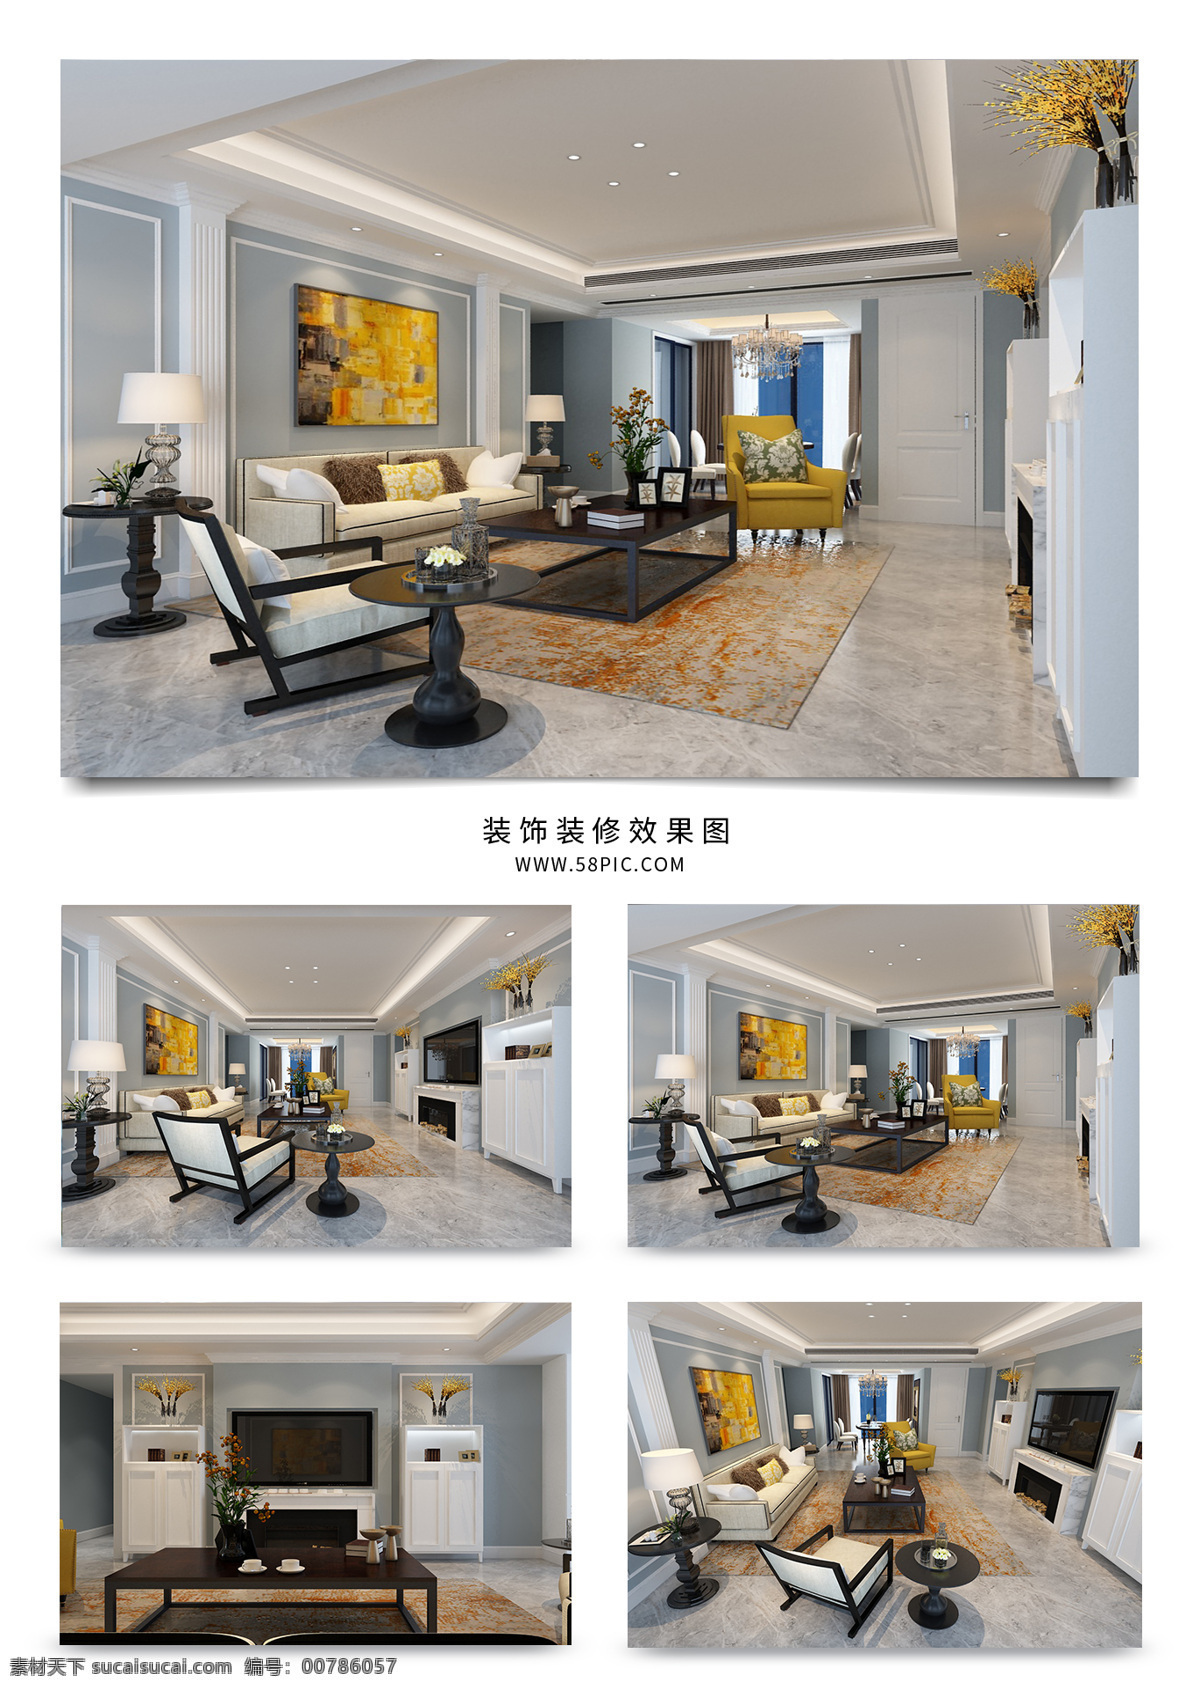 古典 欧式 客厅 空间 效果图 挂画 沙发组合 大理石 装饰品 欧式背景墙 装饰地毯